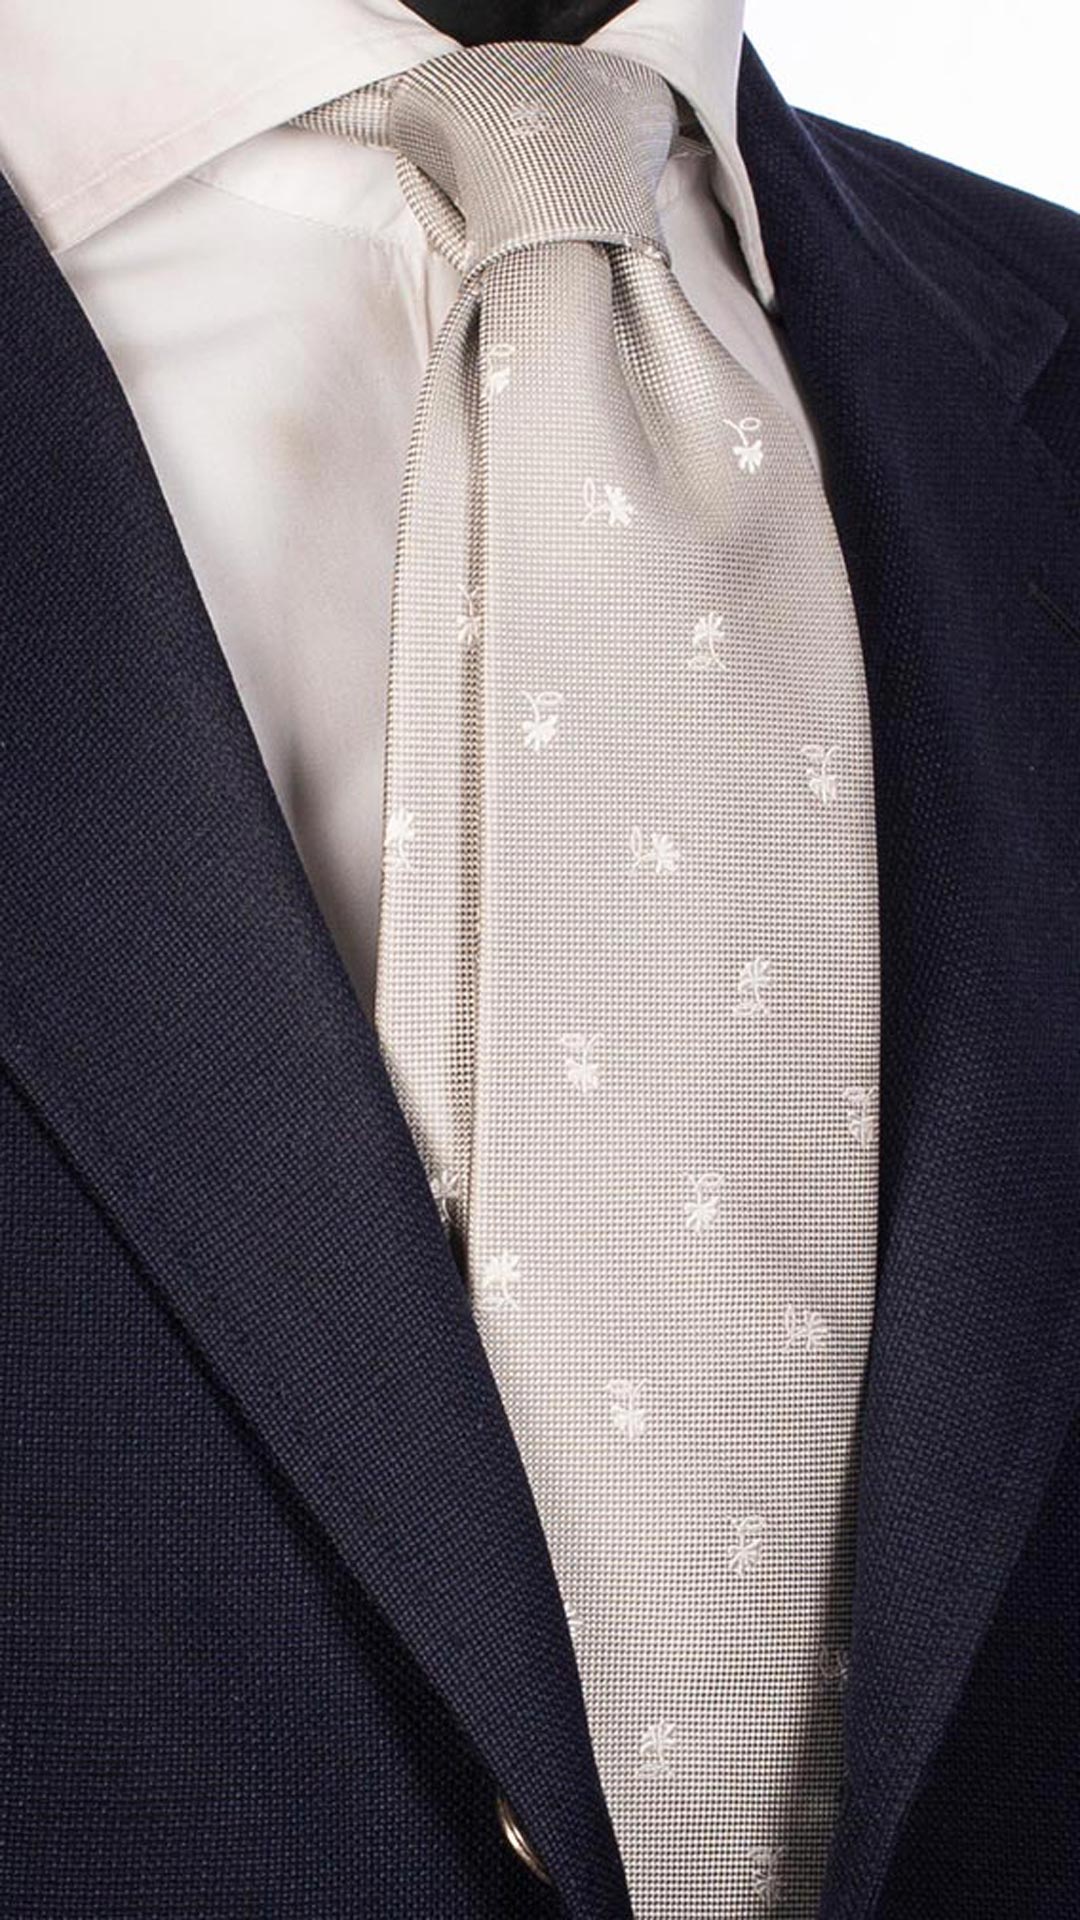 Cravatta da Cerimonia di Seta Grigio Chiaro Fantasia Floreale Bianca CY2701 Made in Italy graffeo Cravatte